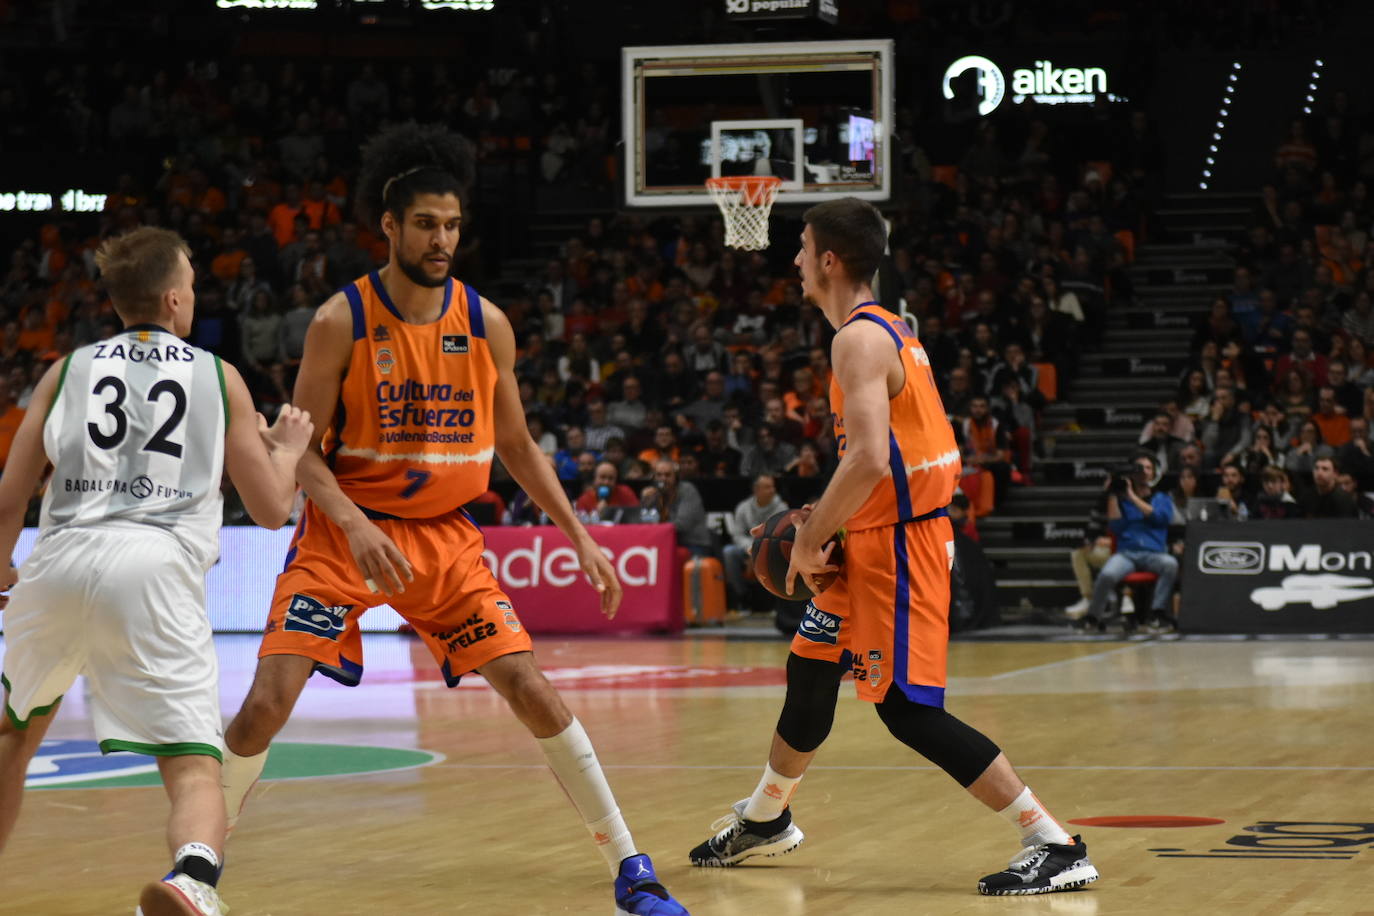 Fotos: El Valencia Basket-Joventut, en imágenes